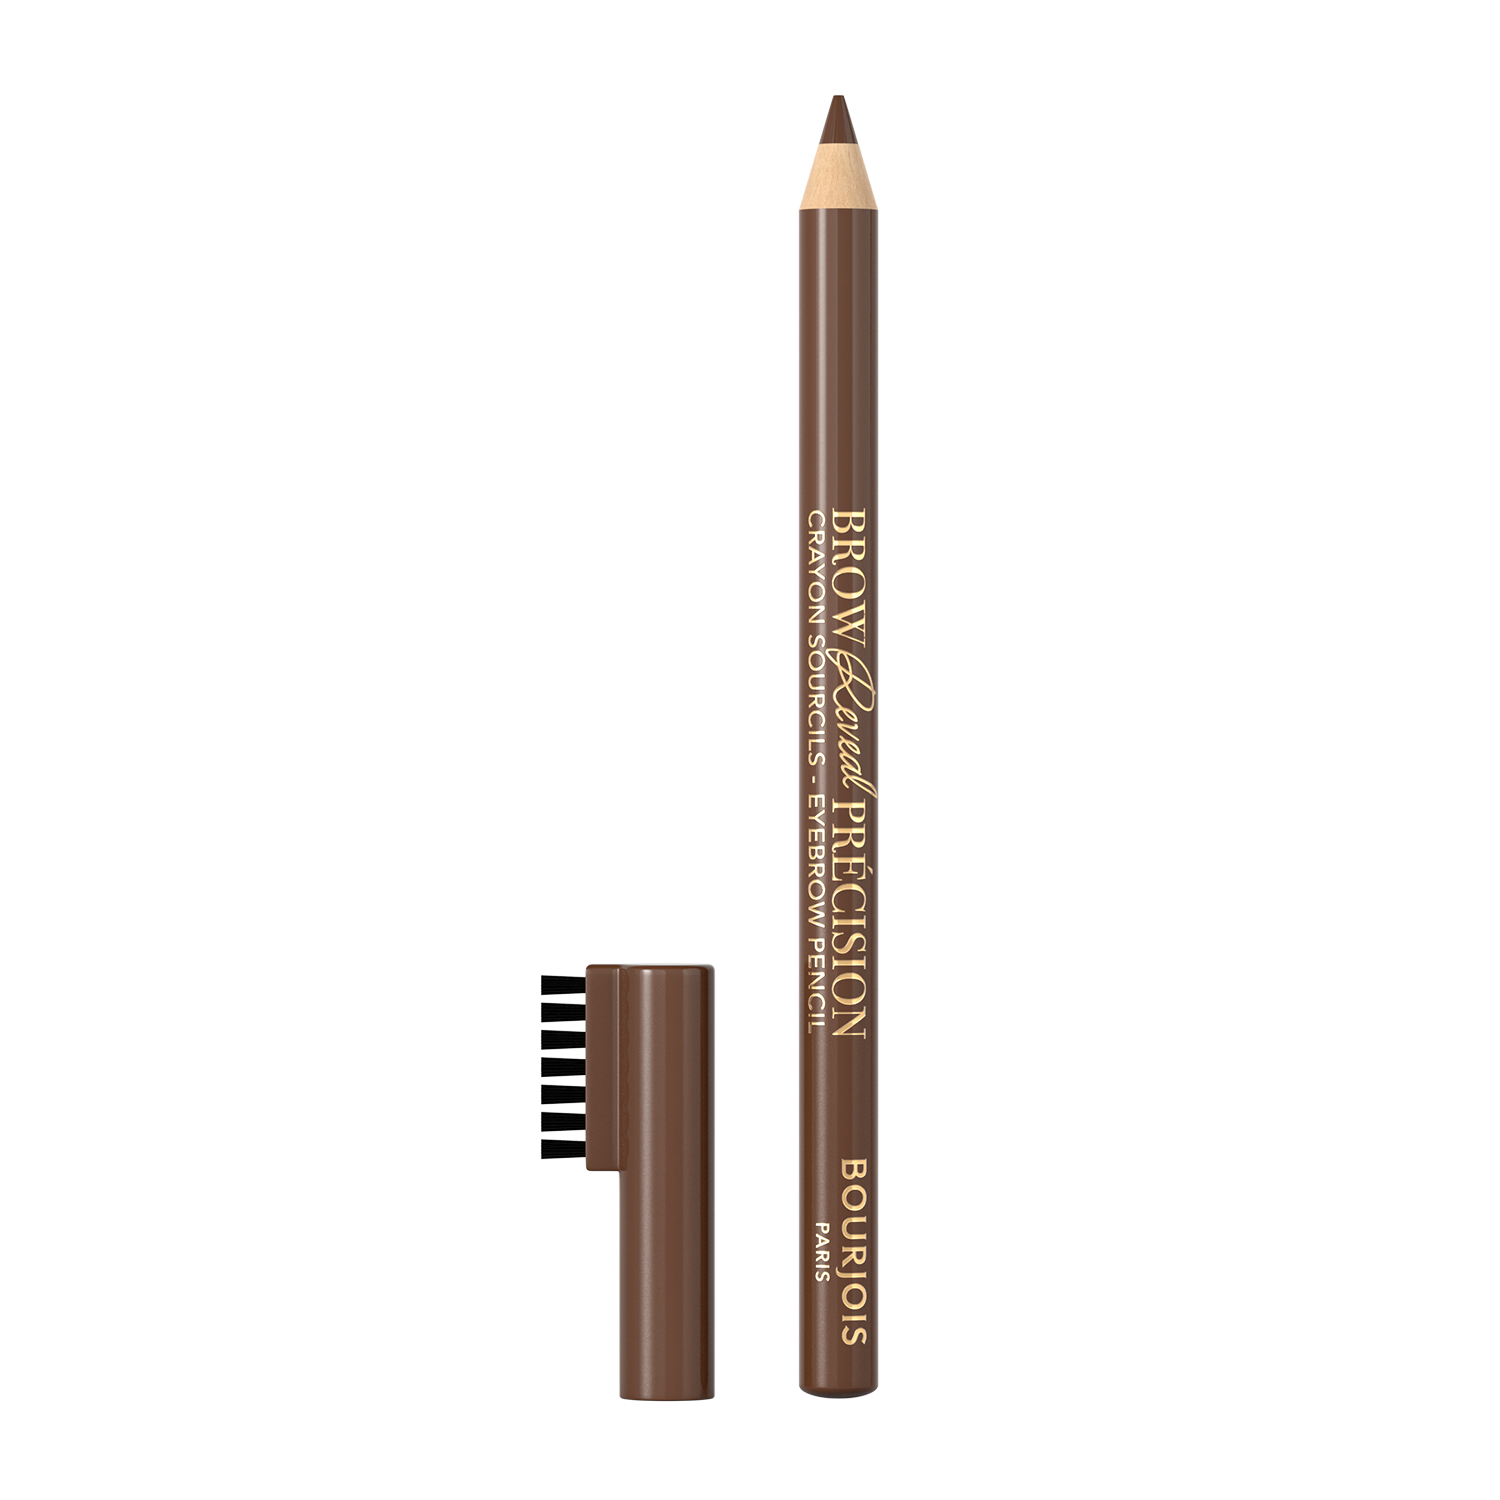 Олівець для брів Bourjois Brow Reveal Precision Medium Brown тон 003, 1.4 г (8000019760400) - фото 2